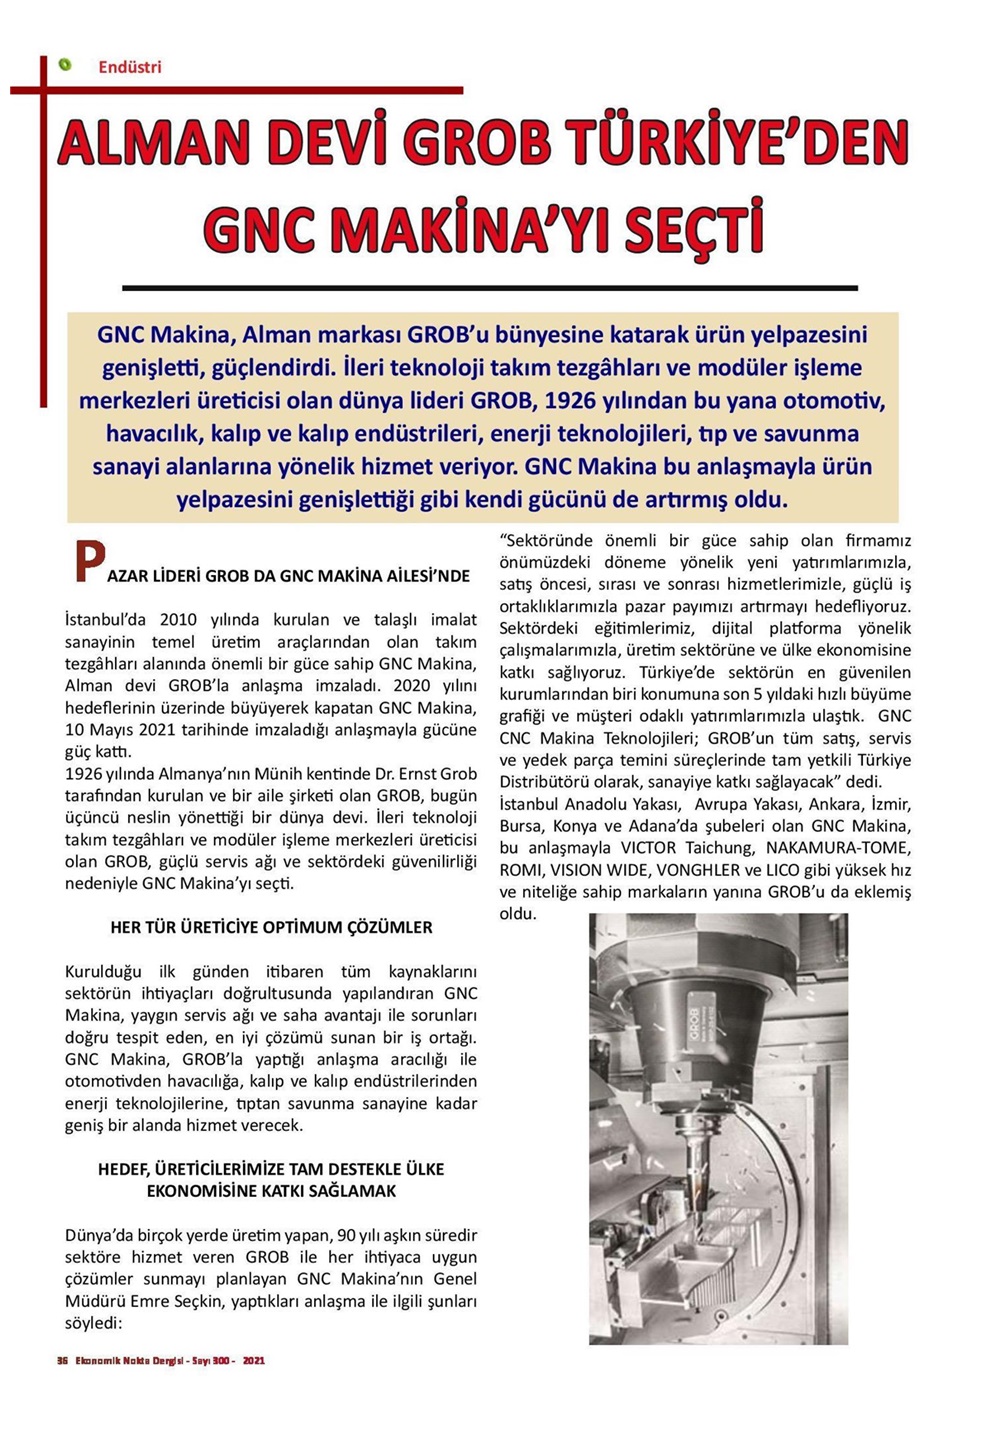 Alman Devi GROB, Türkiye'den GNC Makina'yı Seçti